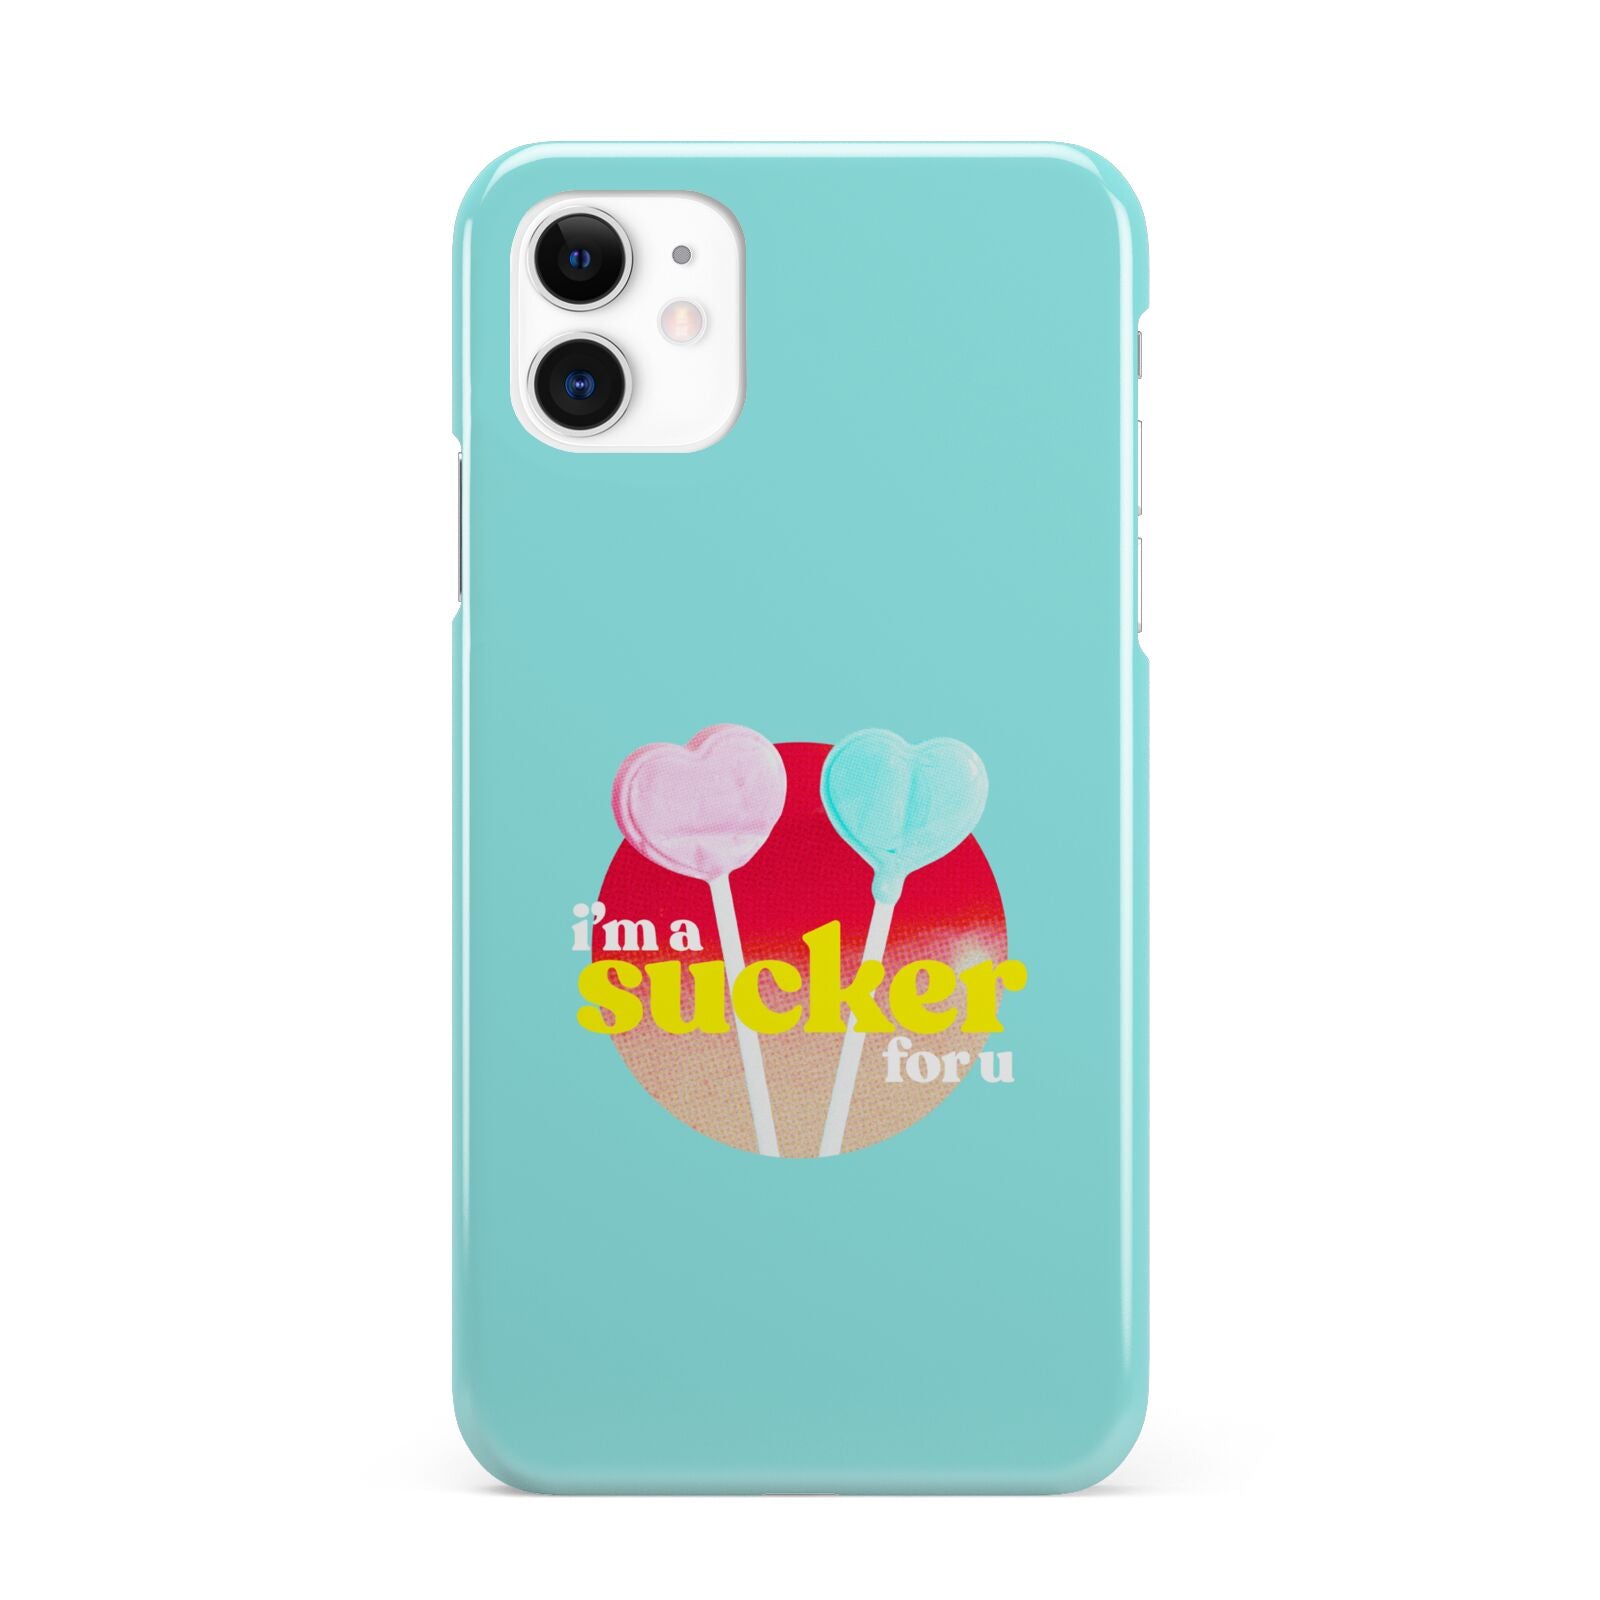 Retro Valentine iPhone 11 3D Snap Case